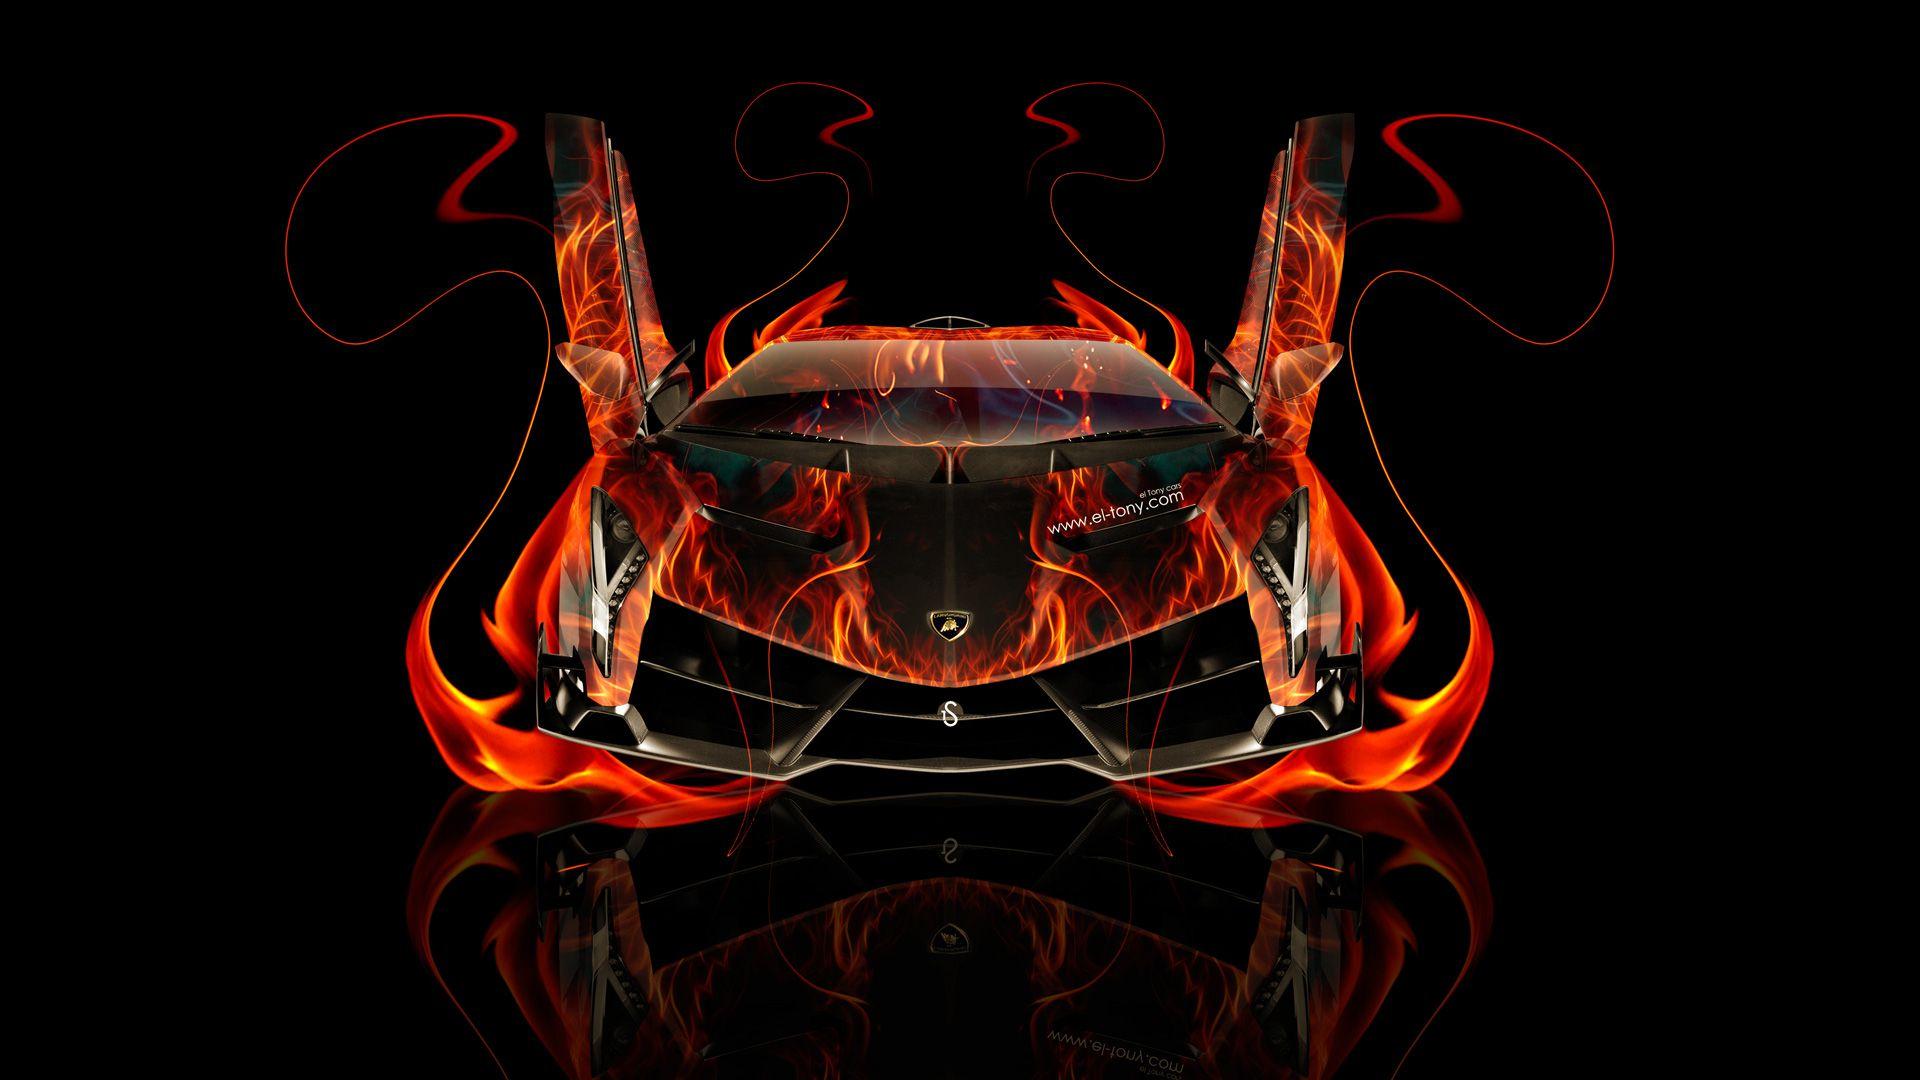 Lamborghini On Fire Wallpapers - Top Free Lamborghini On ...